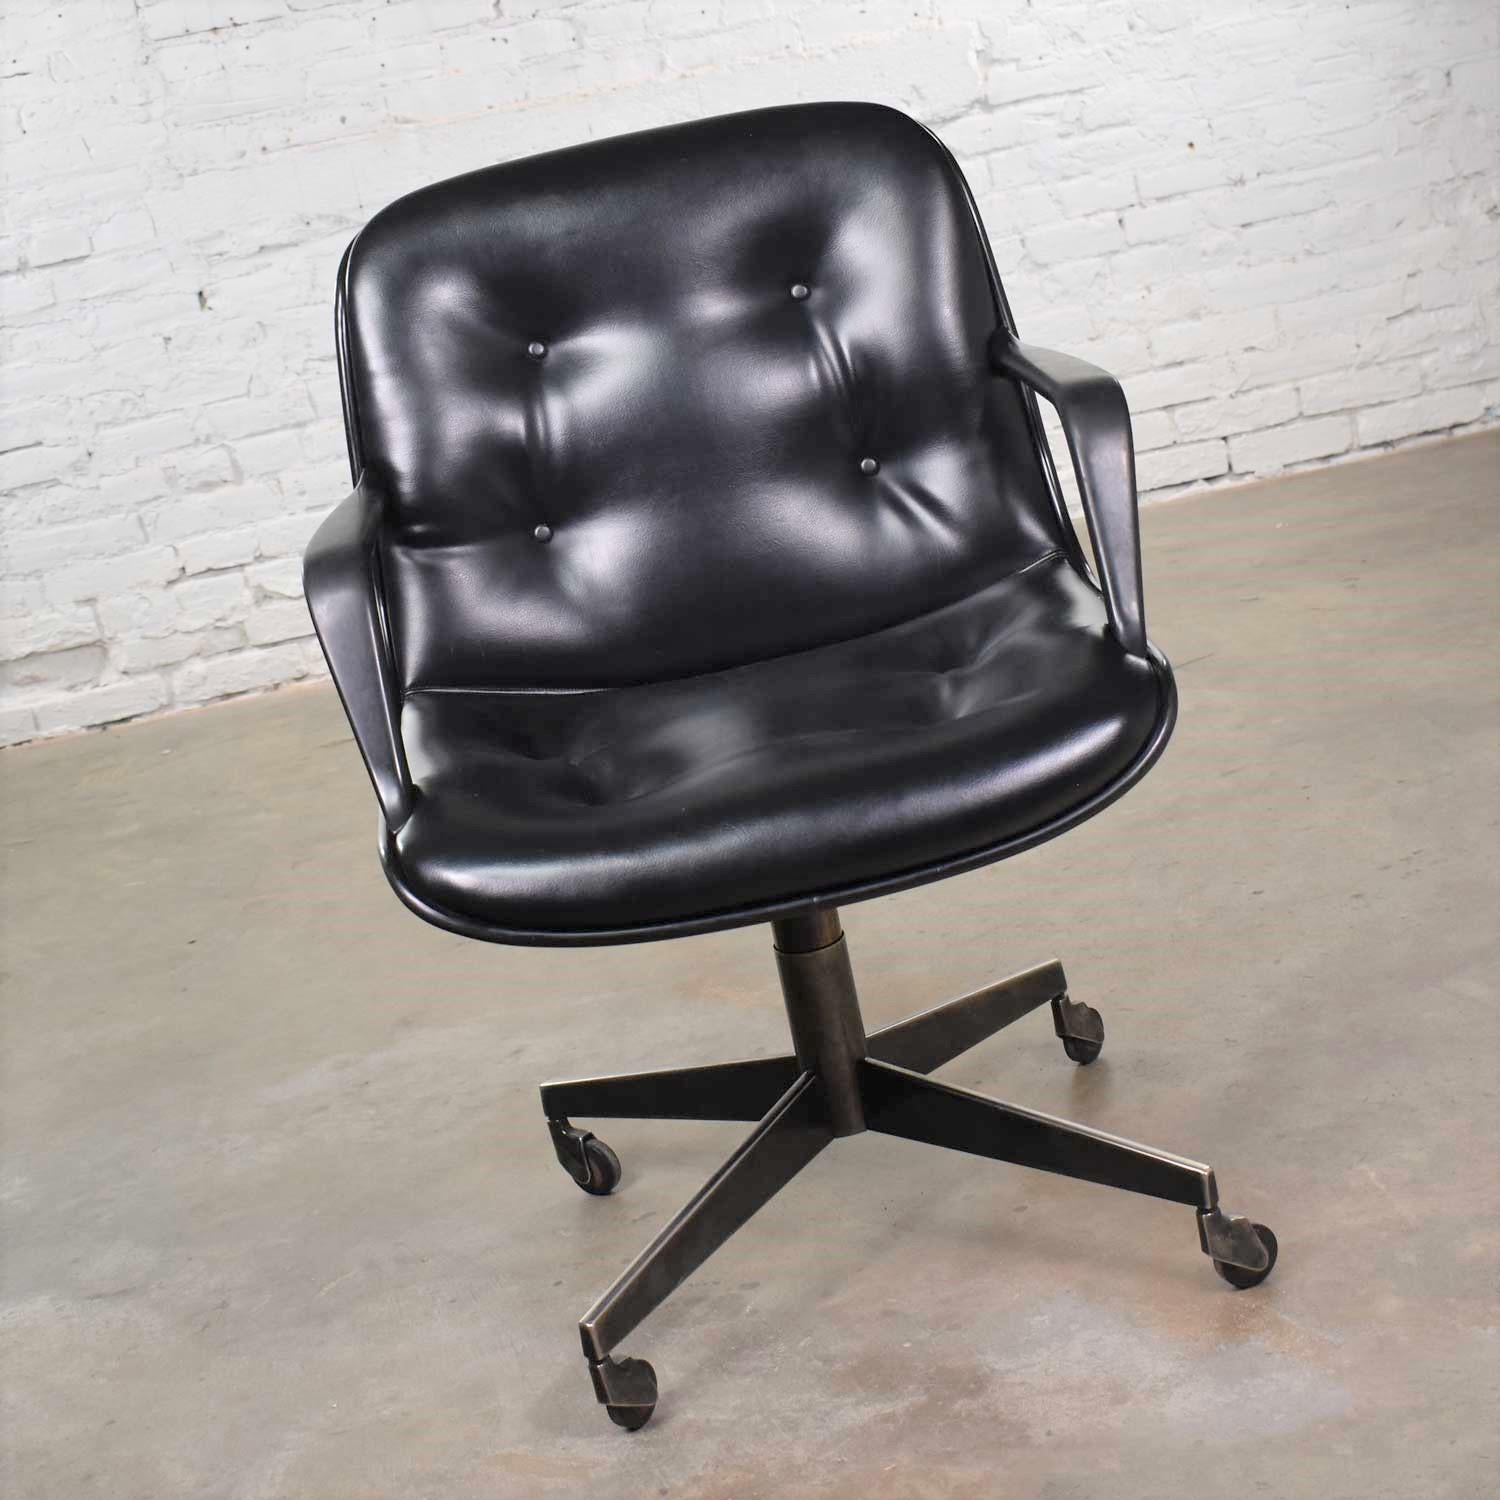 Beau fauteuil de bureau moderne Steelcase 451 en vinyle noir et faux cuir sur roulettes dans le style du fauteuil de bureau inclinable:: pivotant et roulant Charles Pollock pour Knoll. Il est en très bon état et ne présente aucun défaut